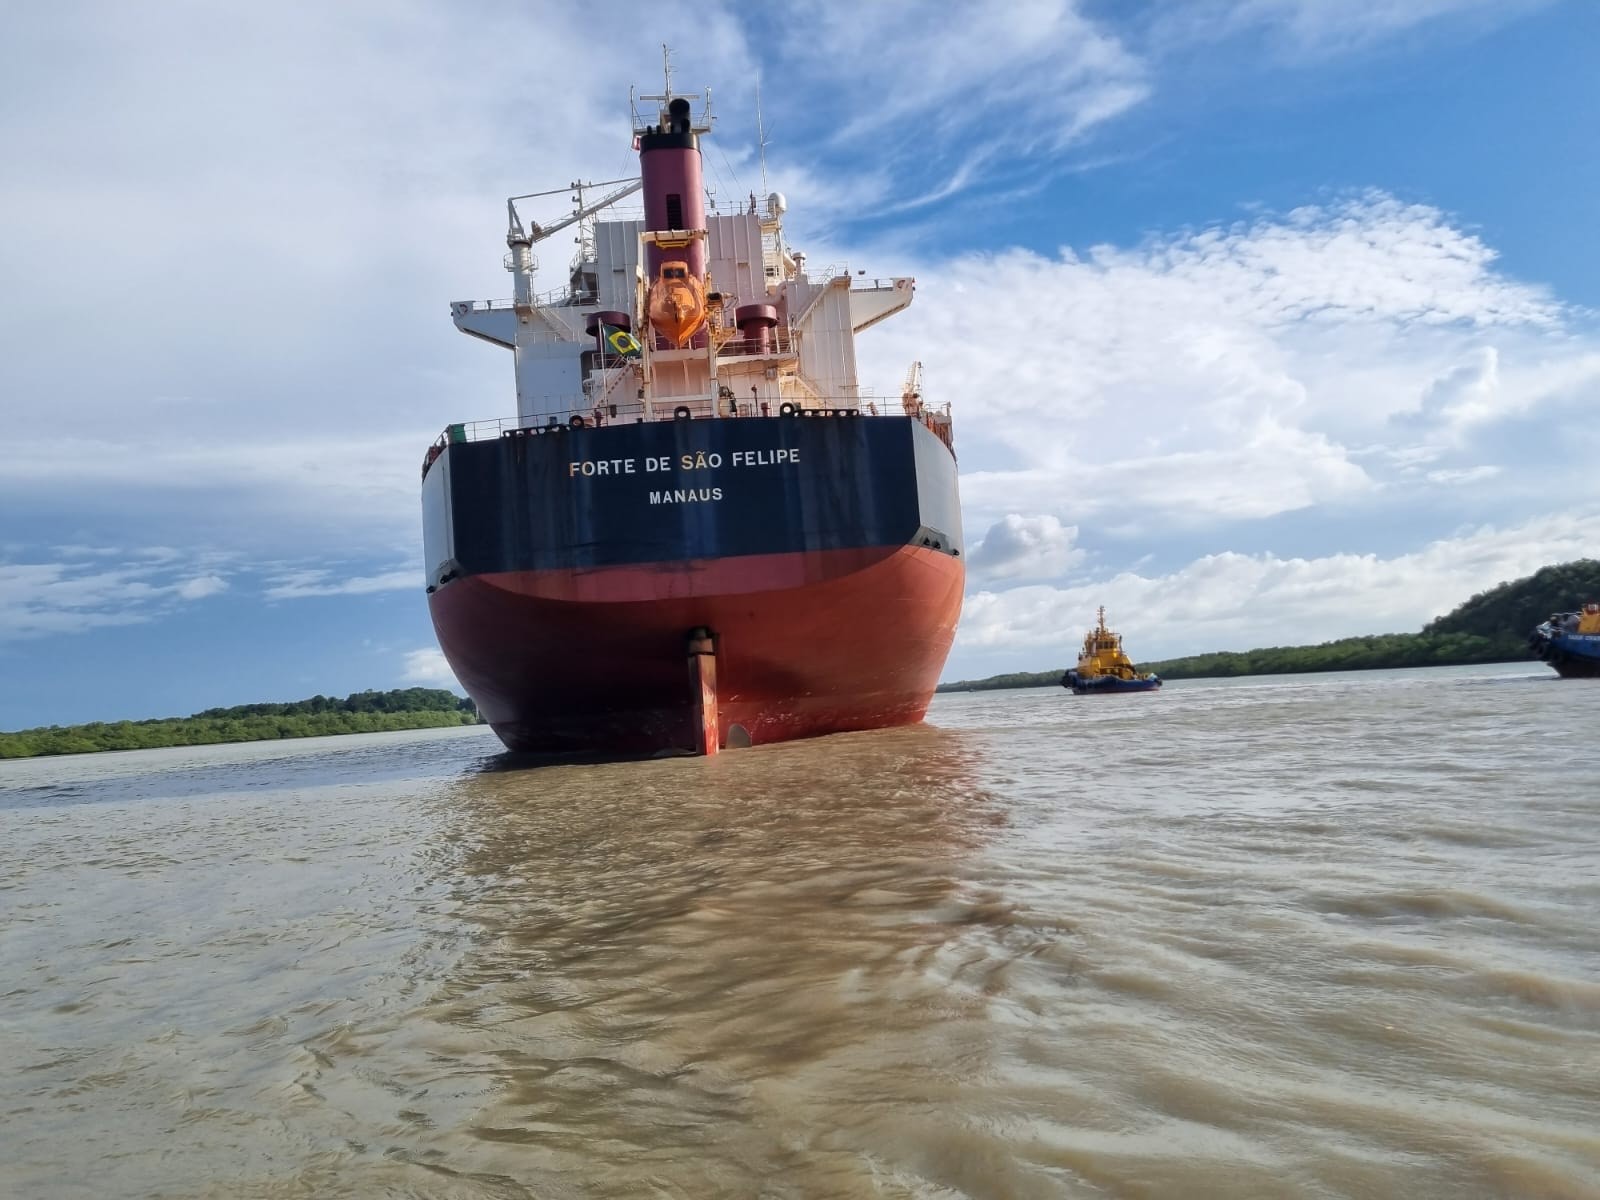 Navio com mais de 220 metros encalha no canal que dá acesso a porto no Maranhão 